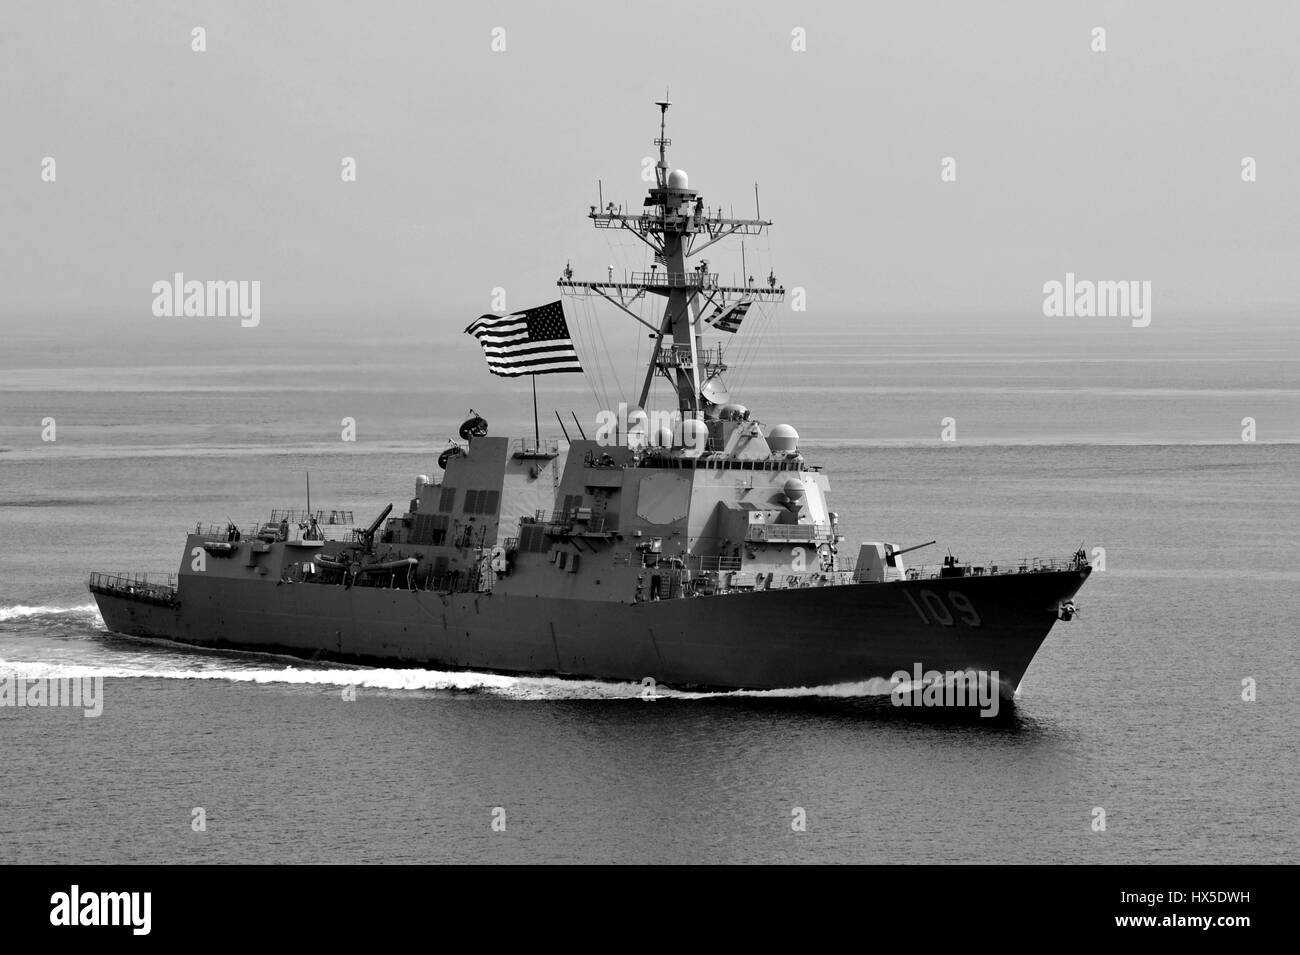 Visite-missile destroyer USS Jason Dunham (DDG 109) sull'acqua negli Stati Uniti Quinta Flotta area di responsabilità, 2013. Immagine cortesia Deven B. King/US Navy. Foto Stock